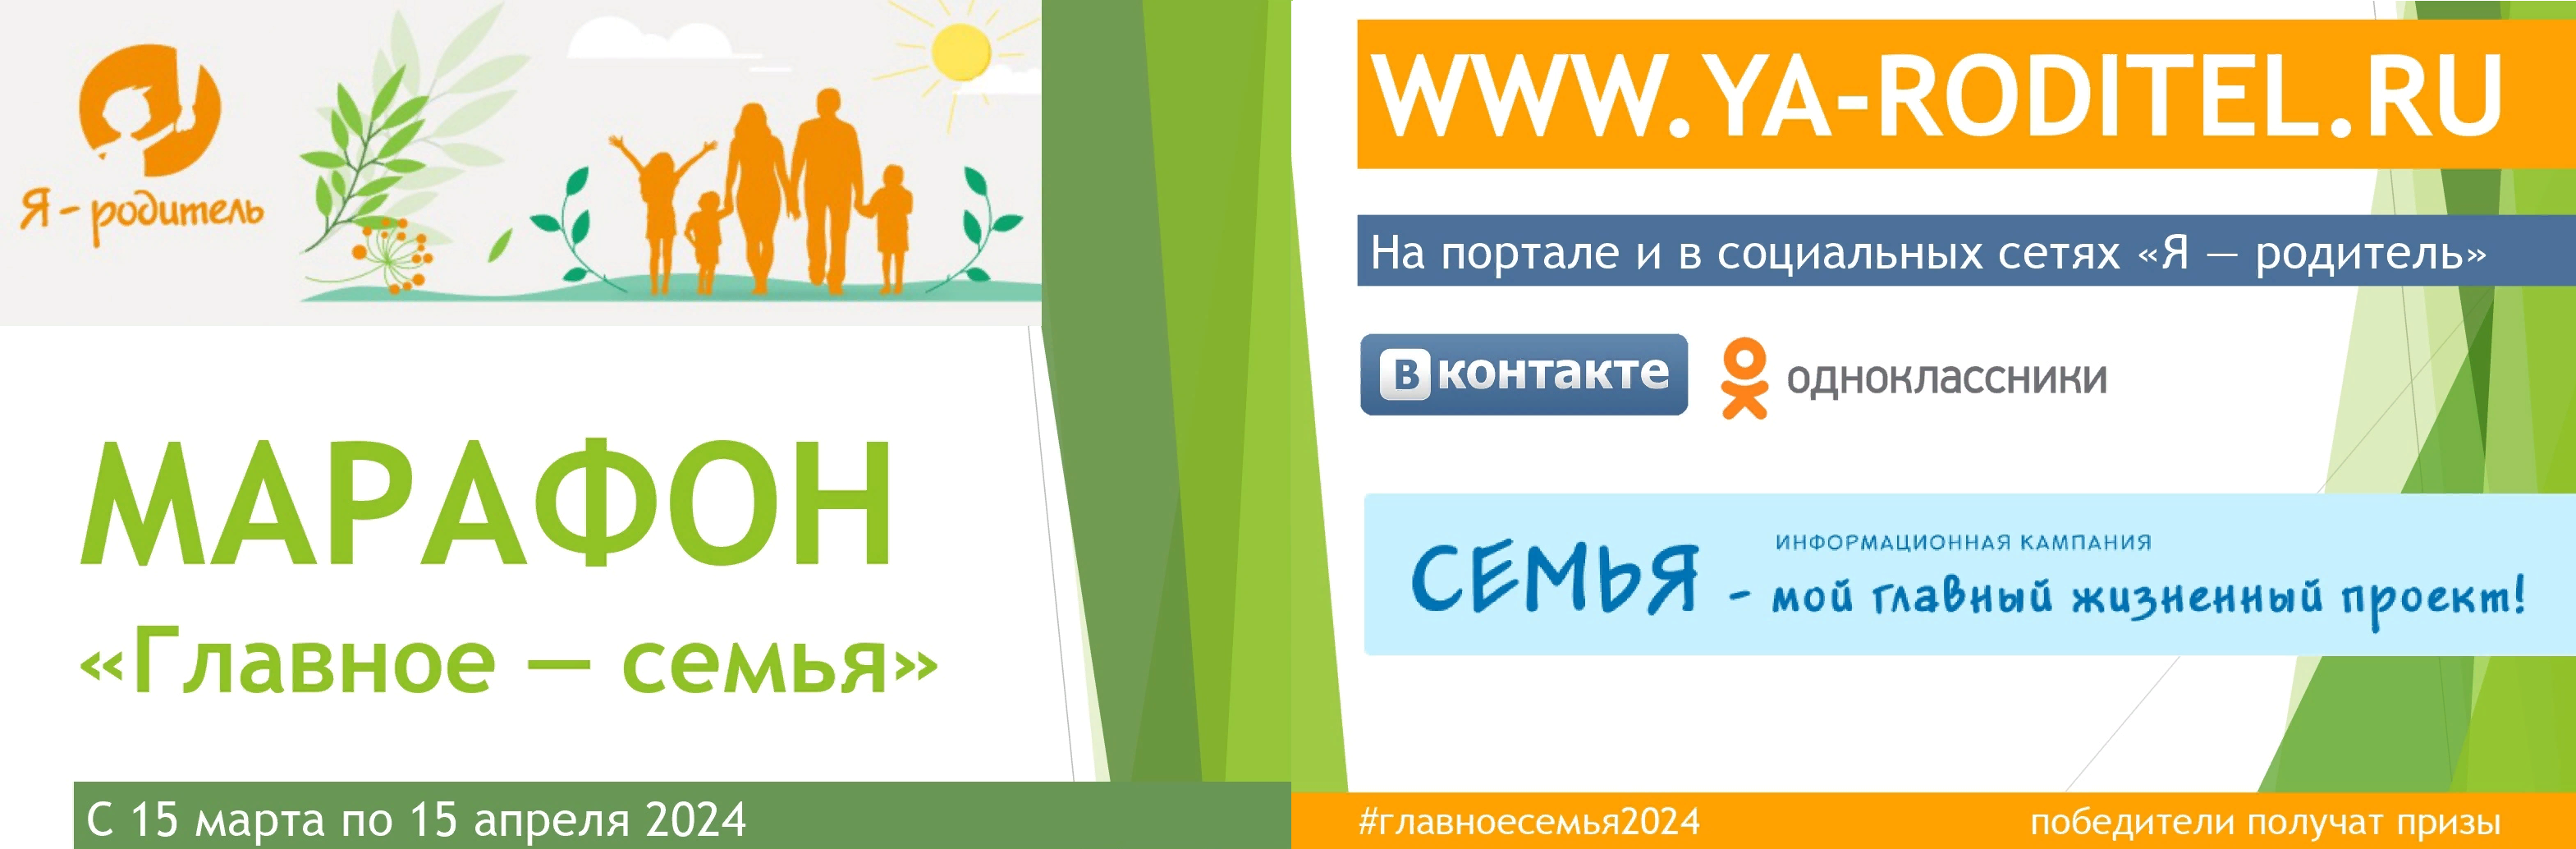 Всероссийский онлайн-марафон #главноесемья2024.